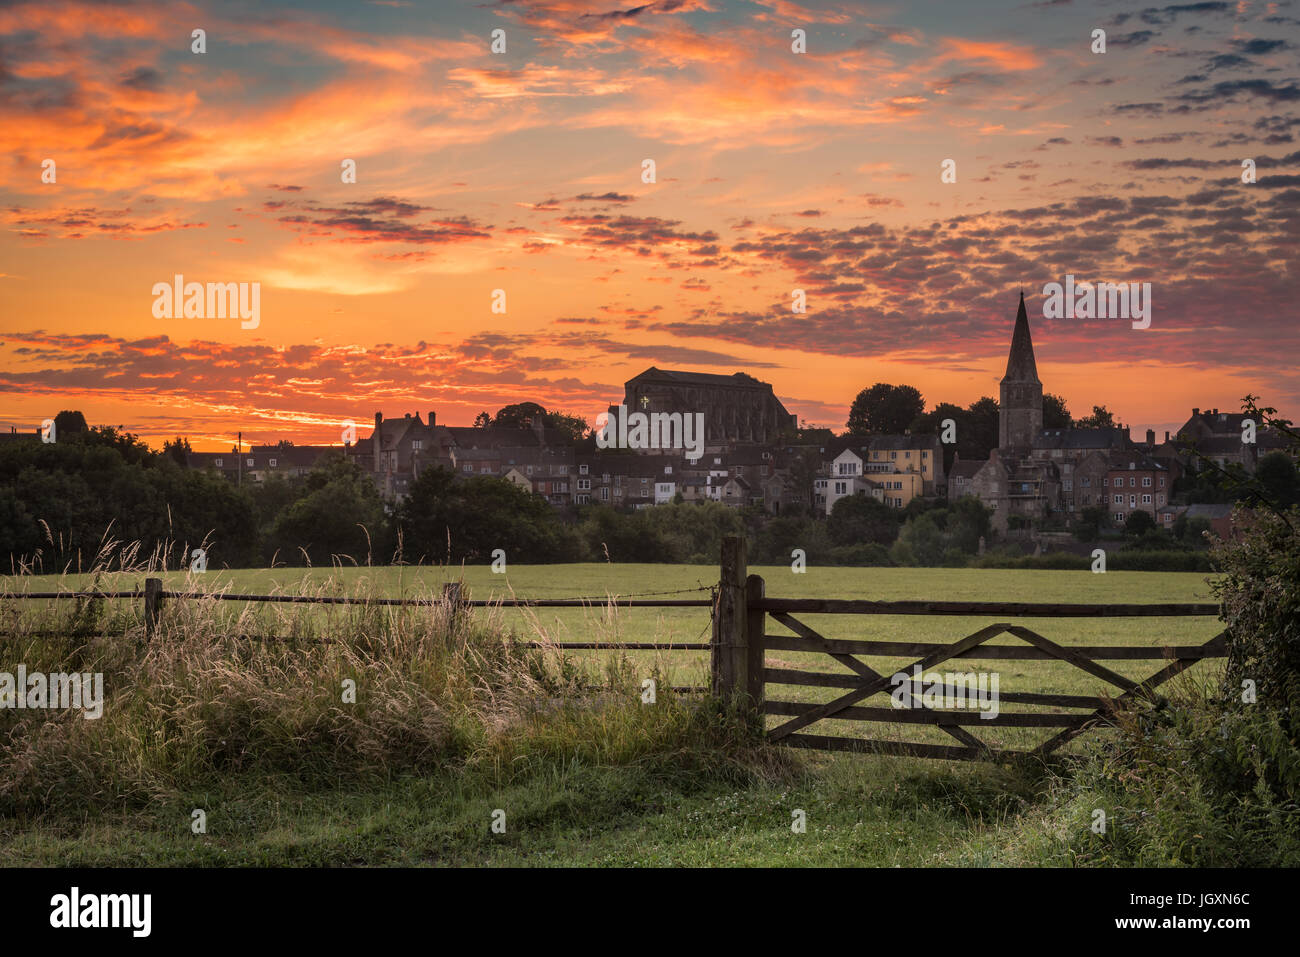 Regno Unito - Previsioni del tempo - Dopo una settimana di tempo caldo in occidente, un colorato tramonto sull'Wiltshire città di Malmesbury è propedeutica meteo temporali e un Foto Stock